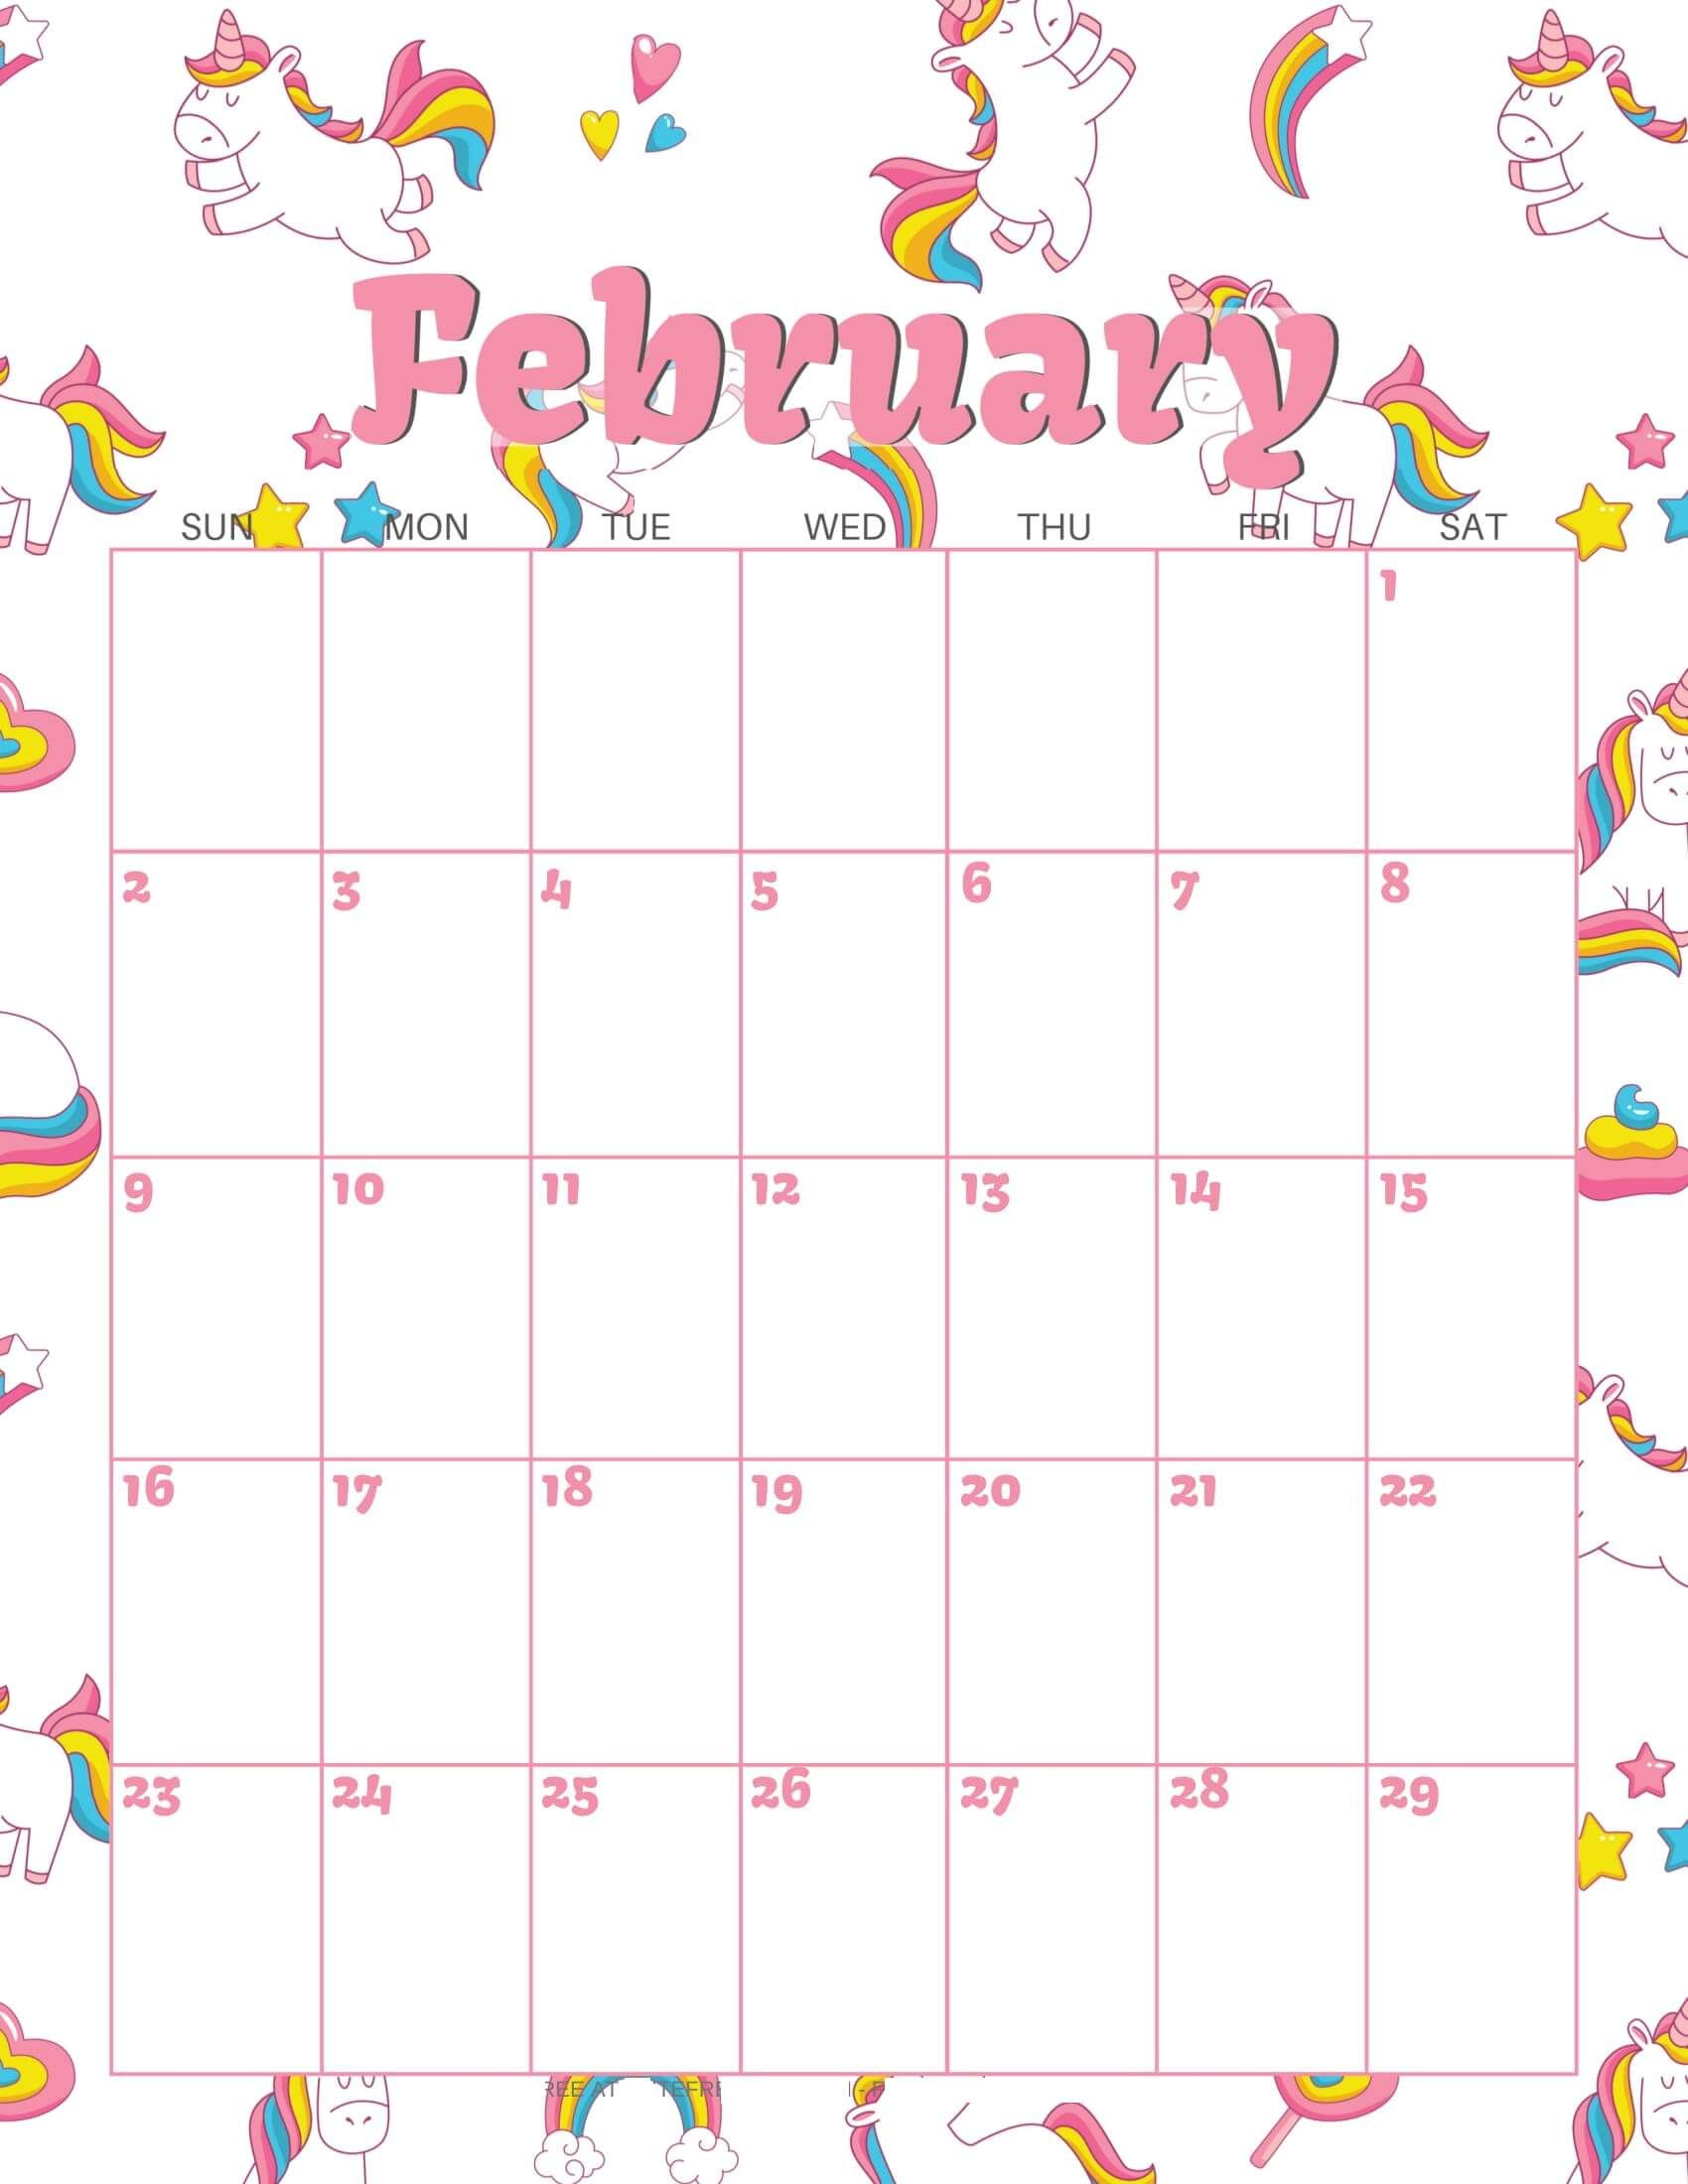 Cute February 2020 Calendar Images In 2020 | Kids Calendar